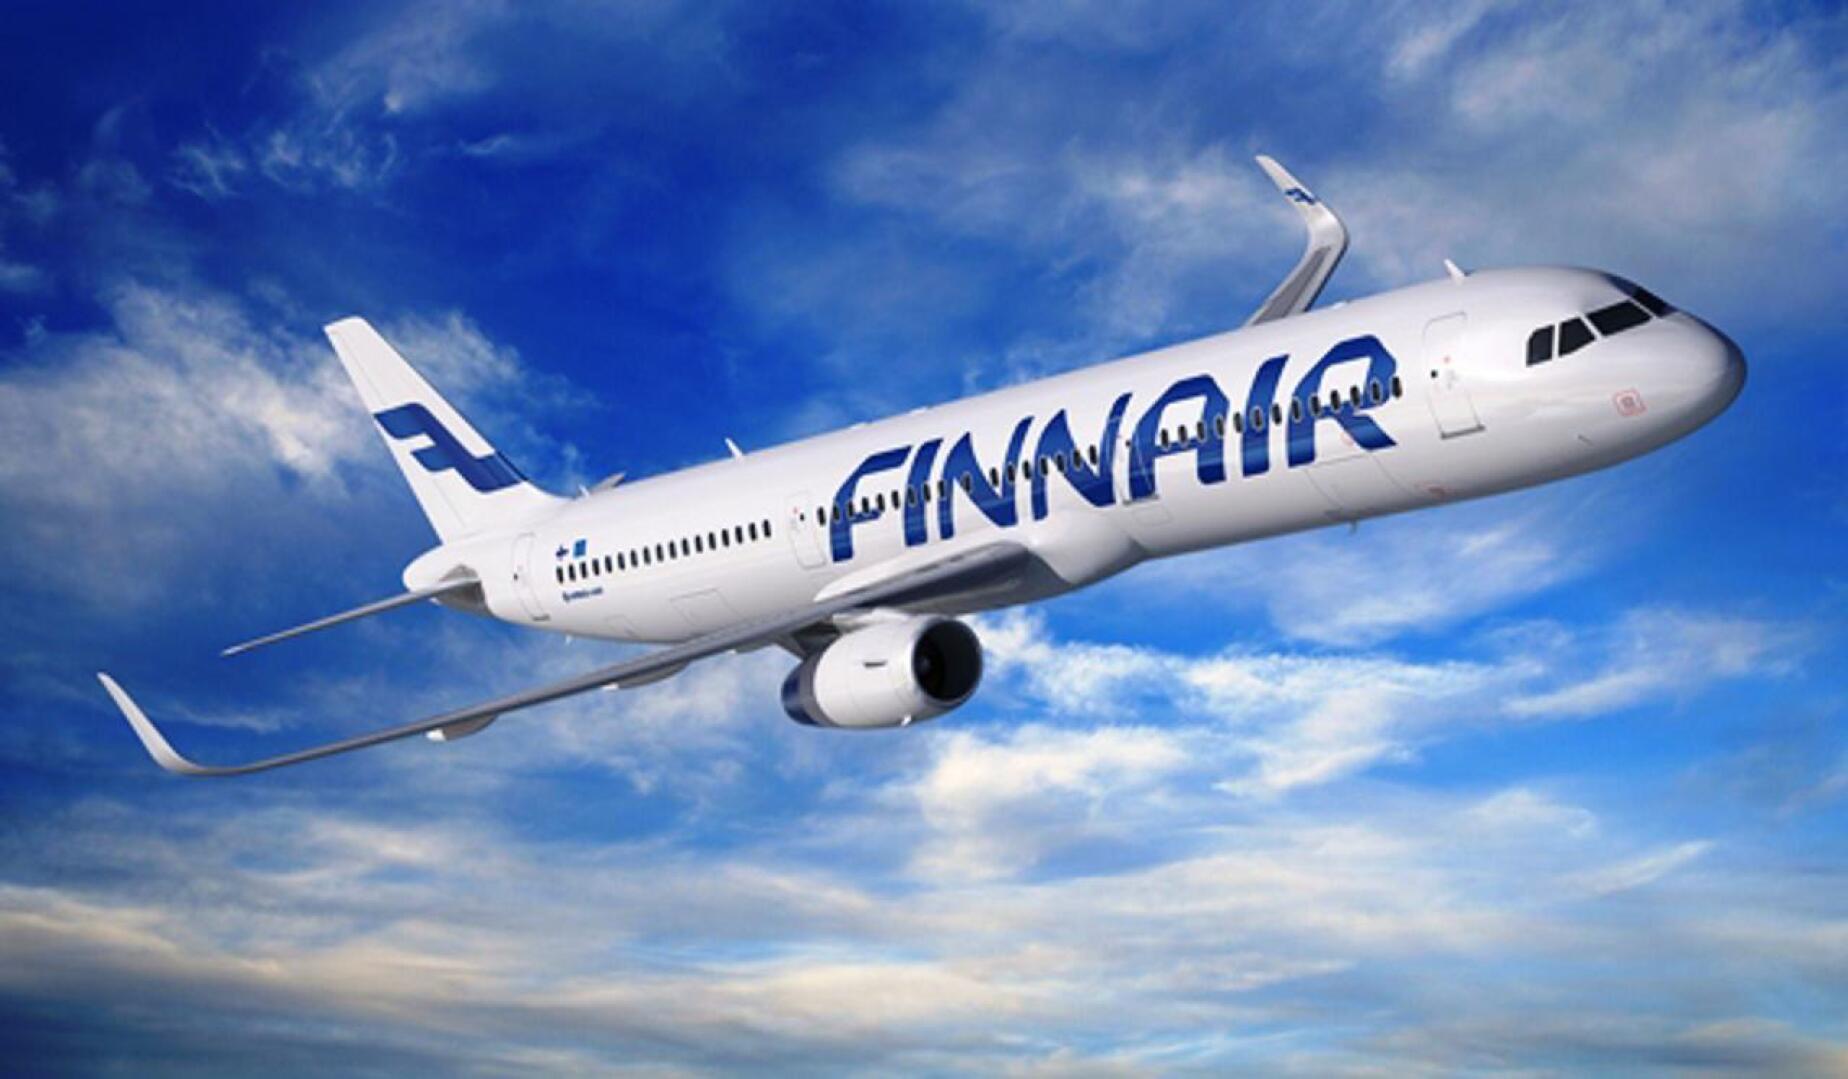 Lentoyhtiö Finnairin matkustamohenkilökunta järjestää viikonvaihteessa ulosmarssin, kertoi Auto- ja Kuljetusalan Työntekijäliitto AKT tiedotteessaan lauantaina.